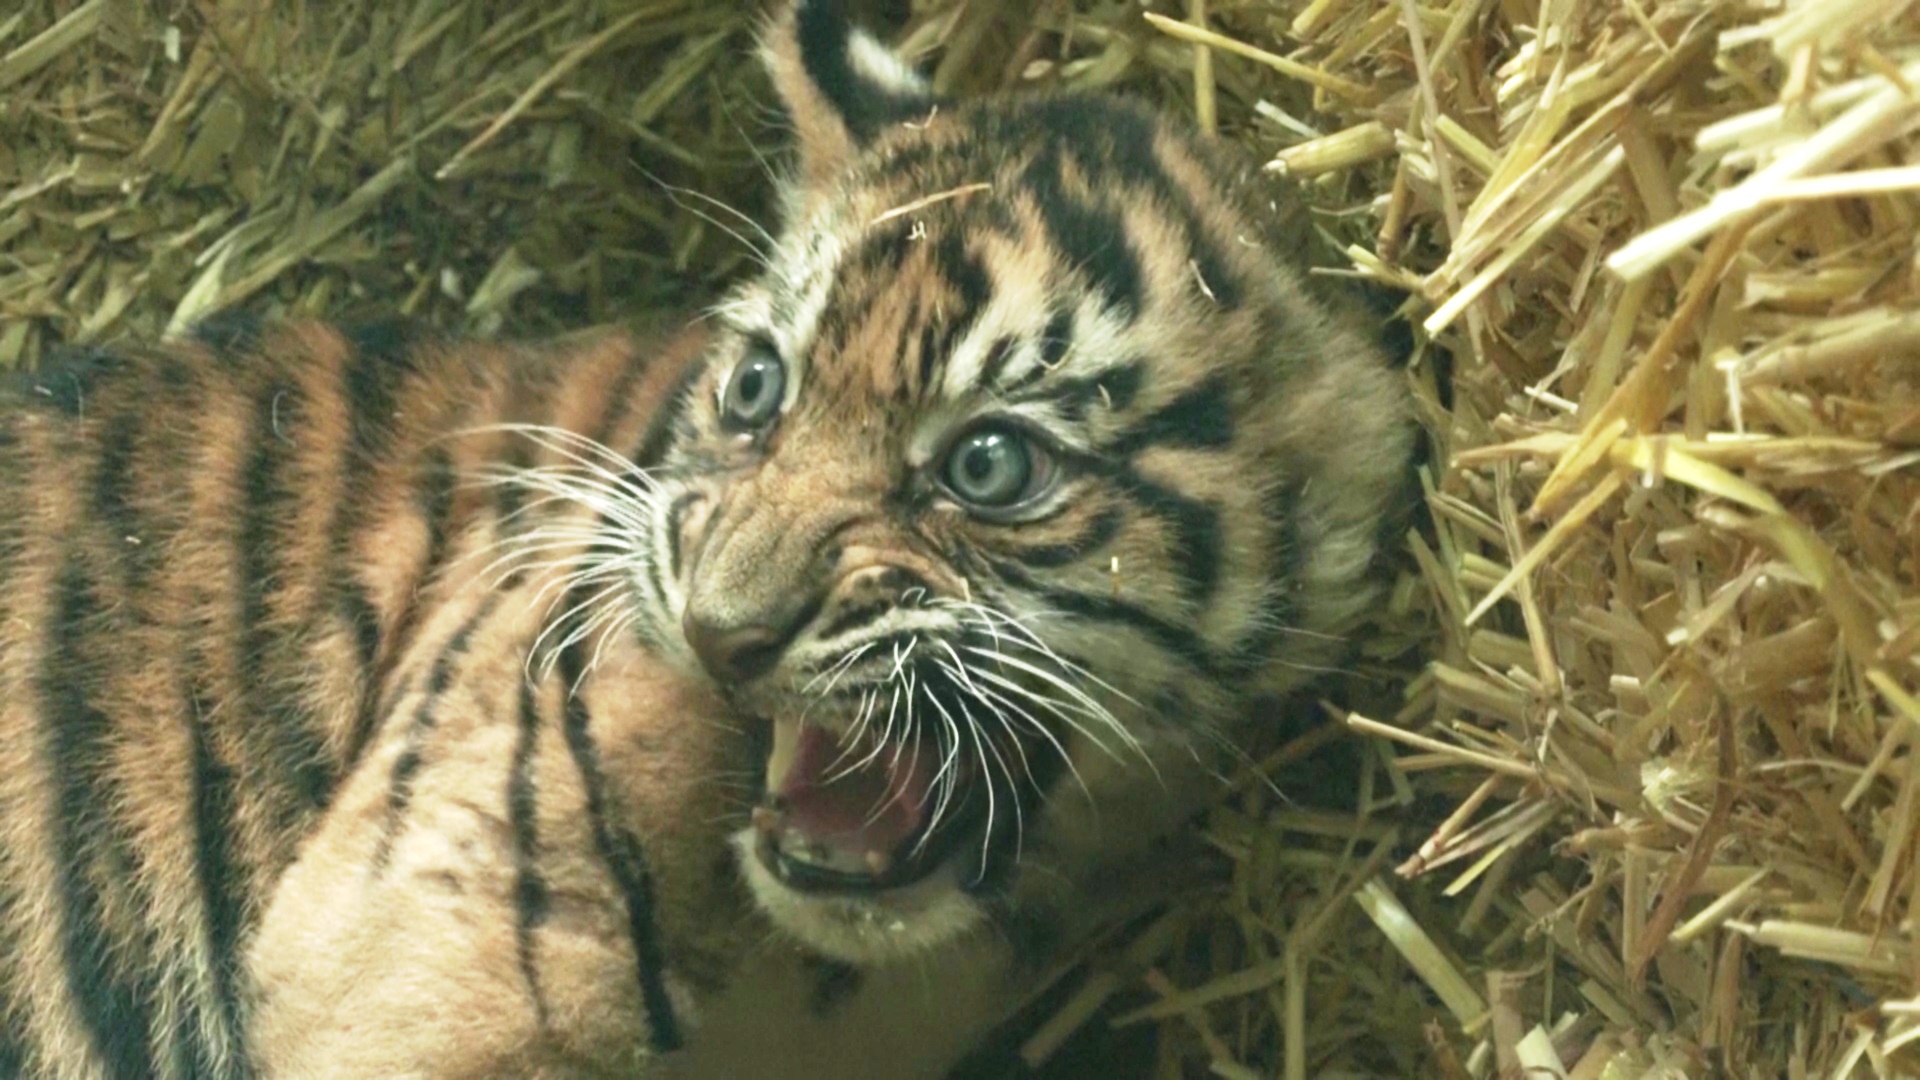 Редких суматранских тигрят представил публике Франкфуртский зоопарк